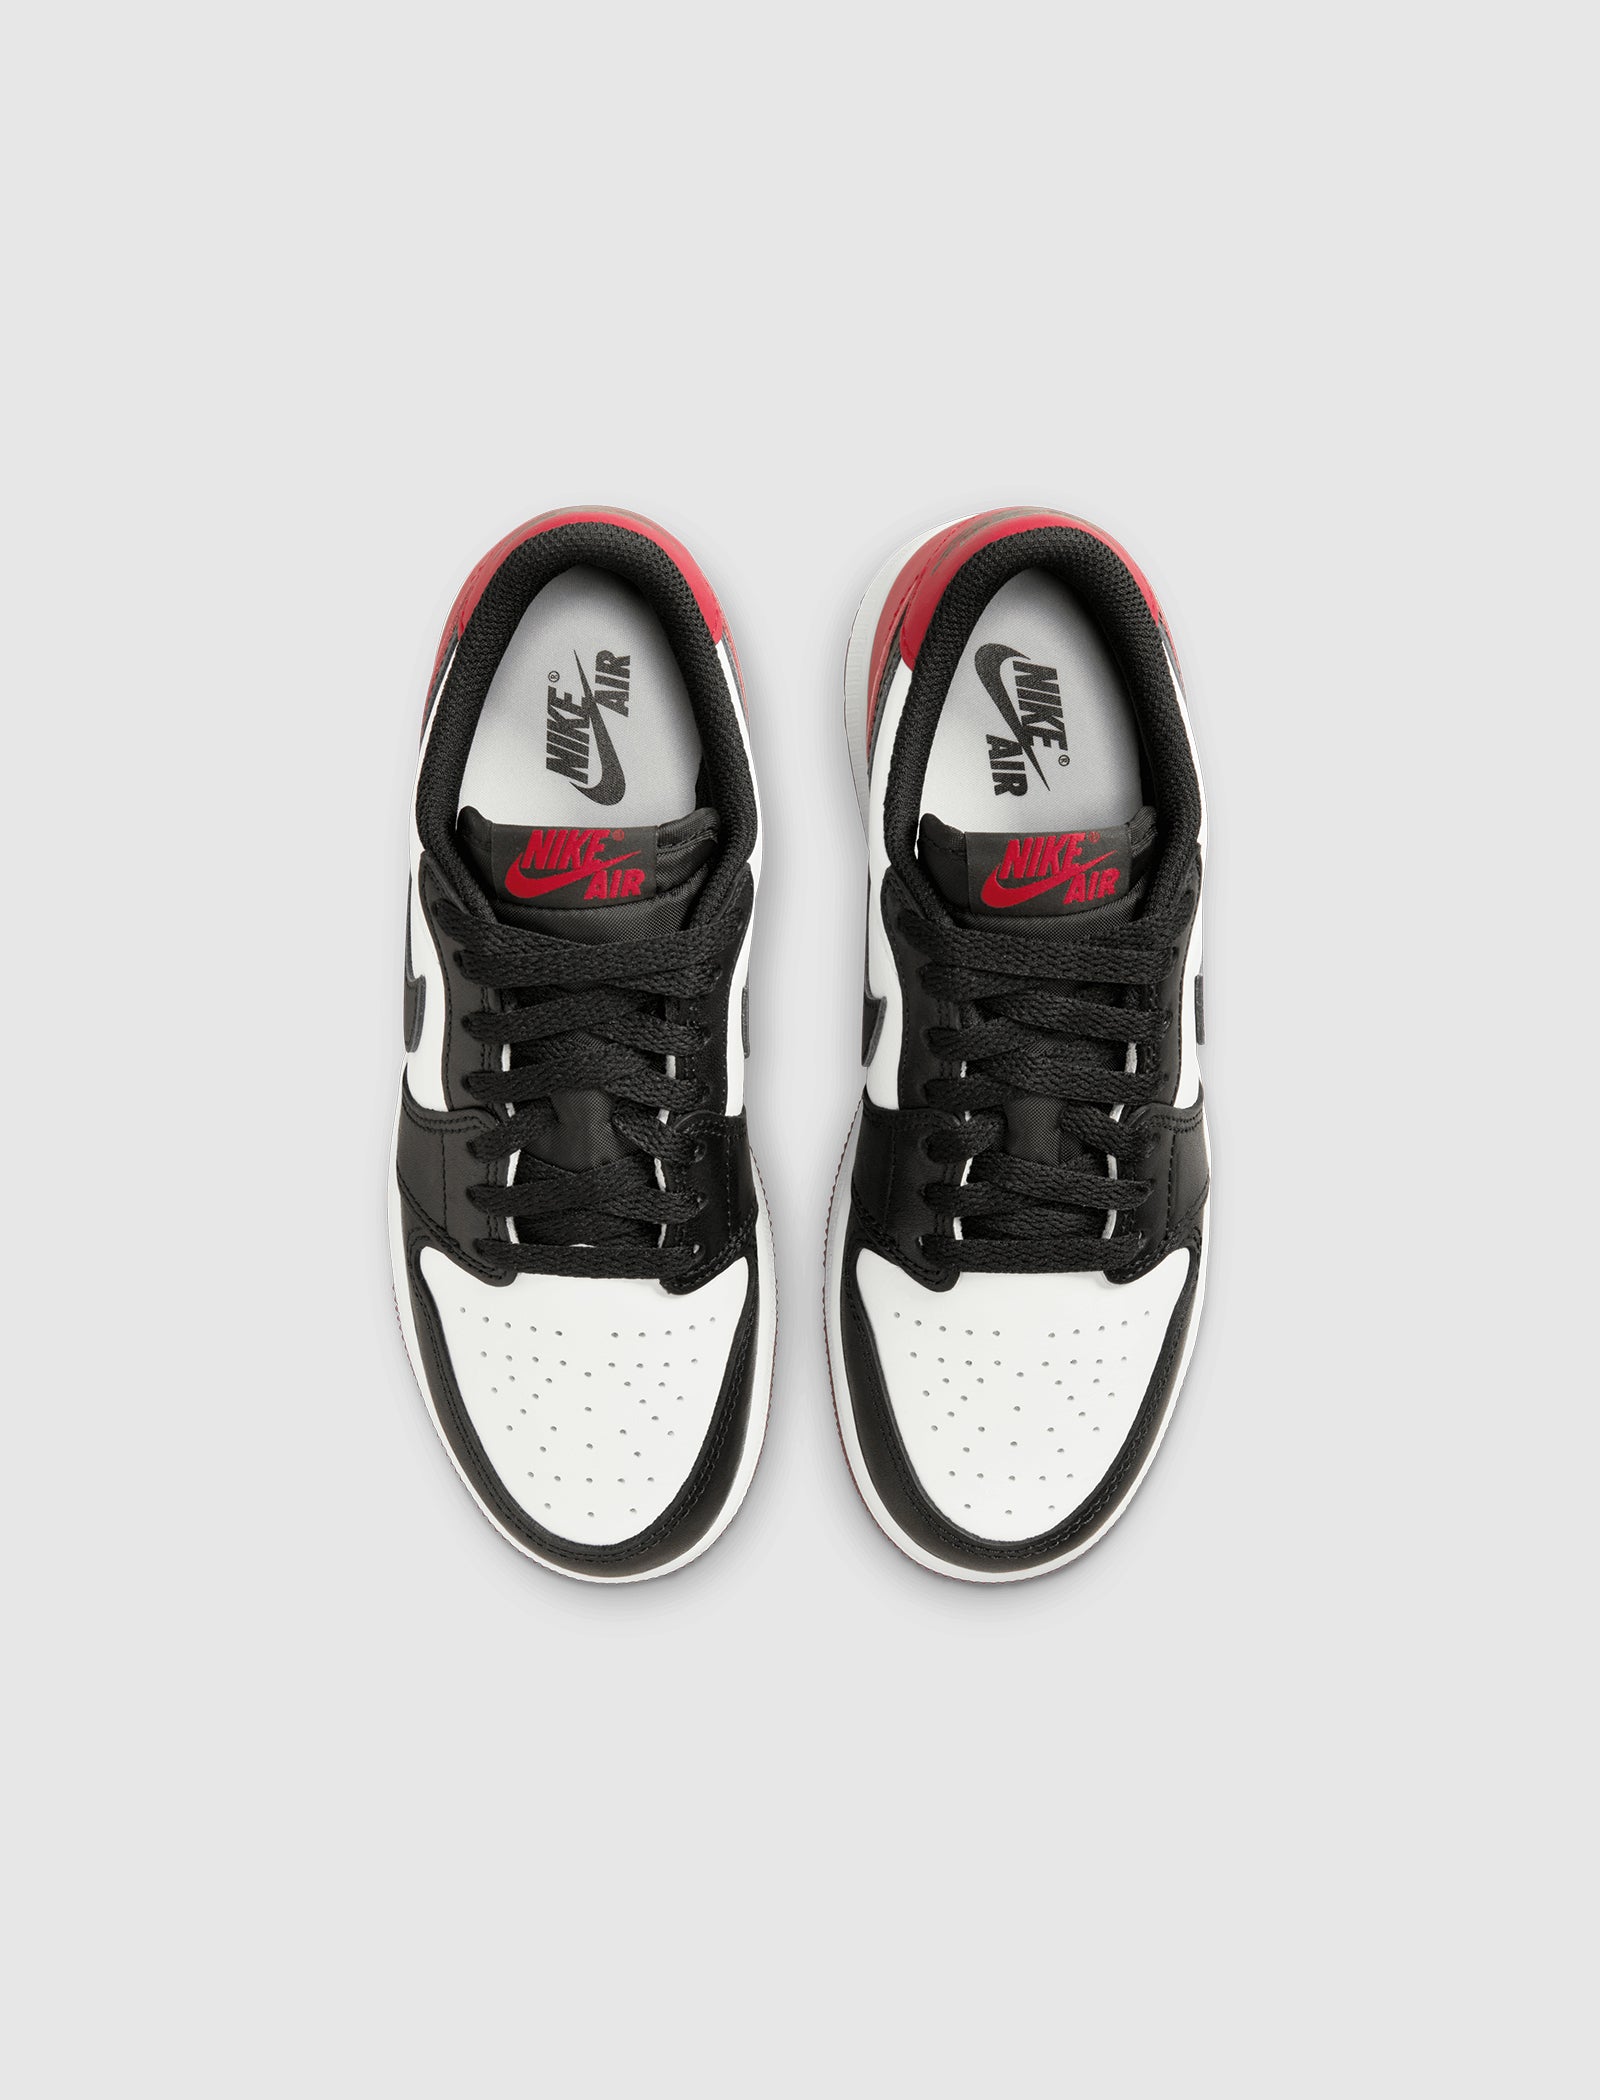 Air Jordan 1 Low OG Black Toe